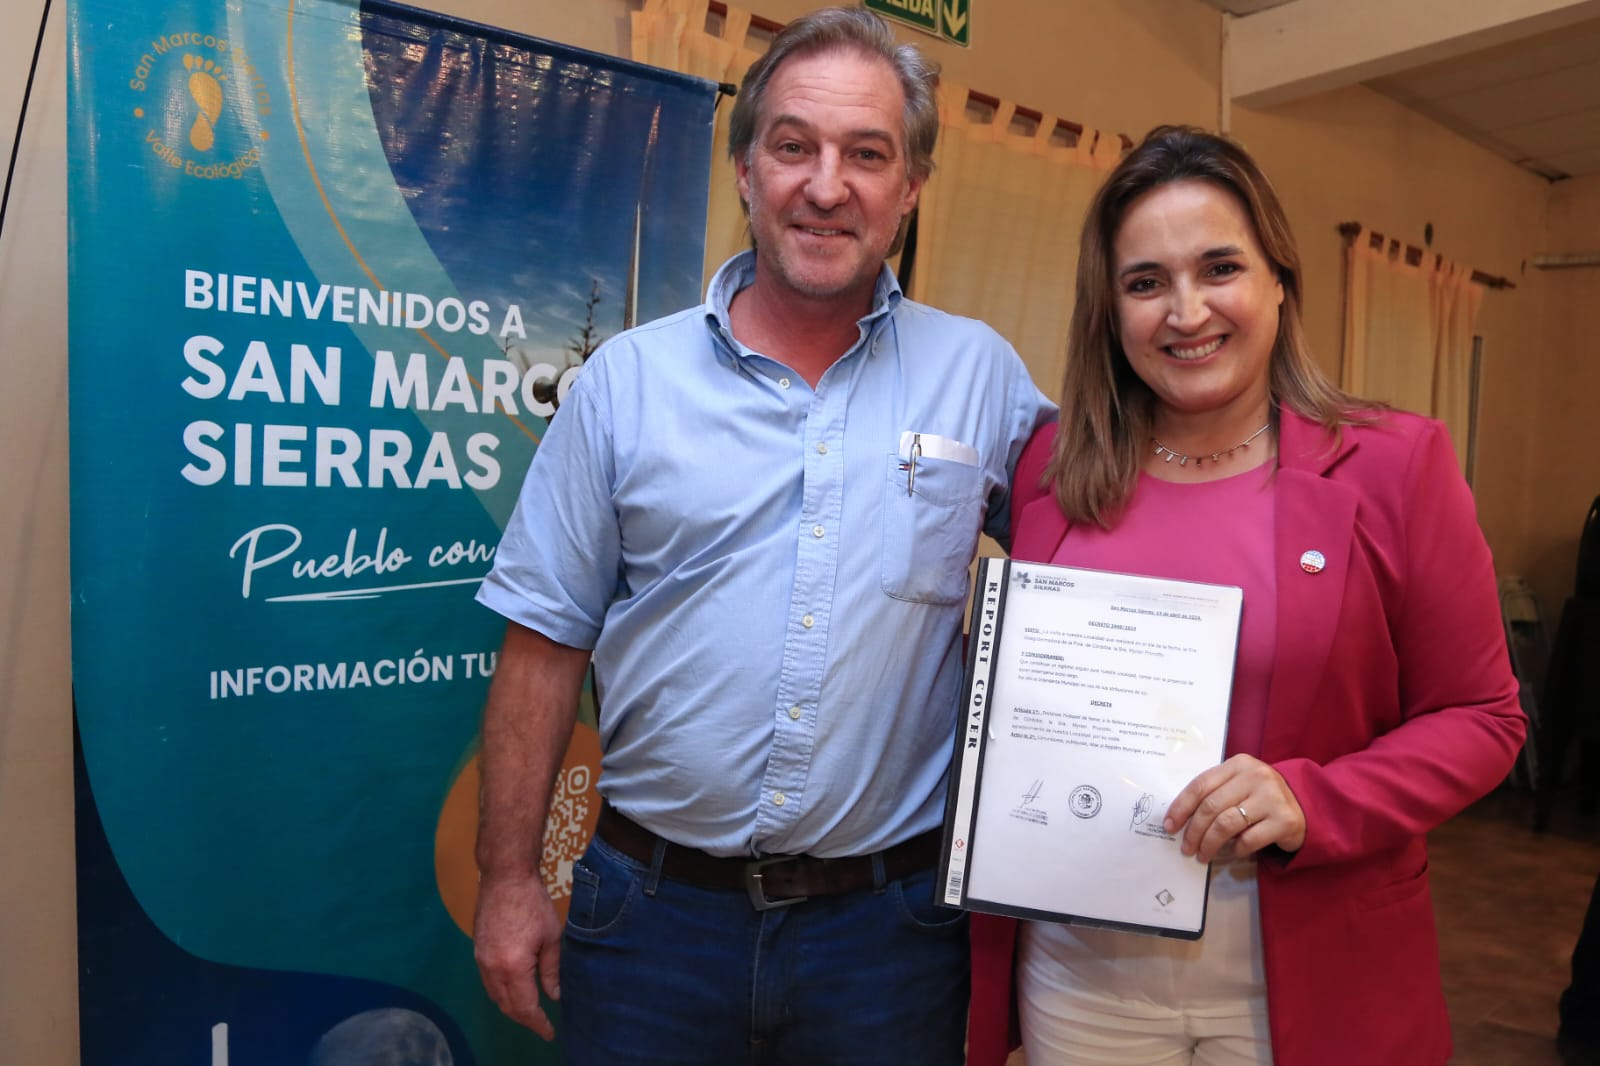 Myrian Prunotto lideró el encuentro en San Marcos Sierras para fortalecer la colaboración regional • Canal C